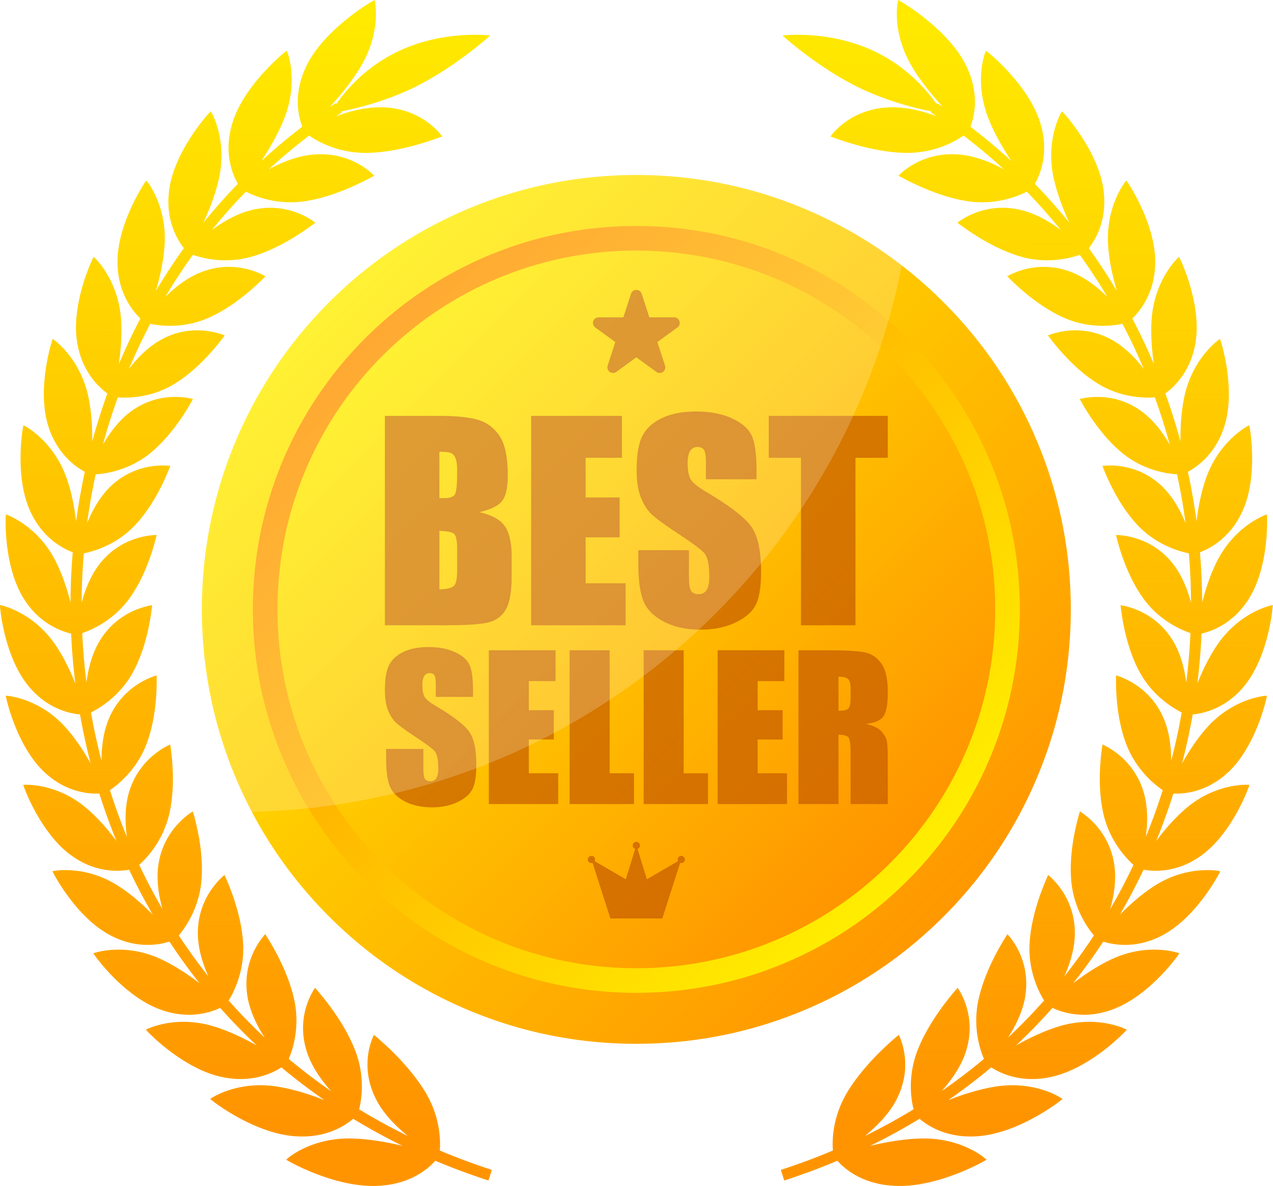 Golden best seller. Award medal. Special offer price sign. V